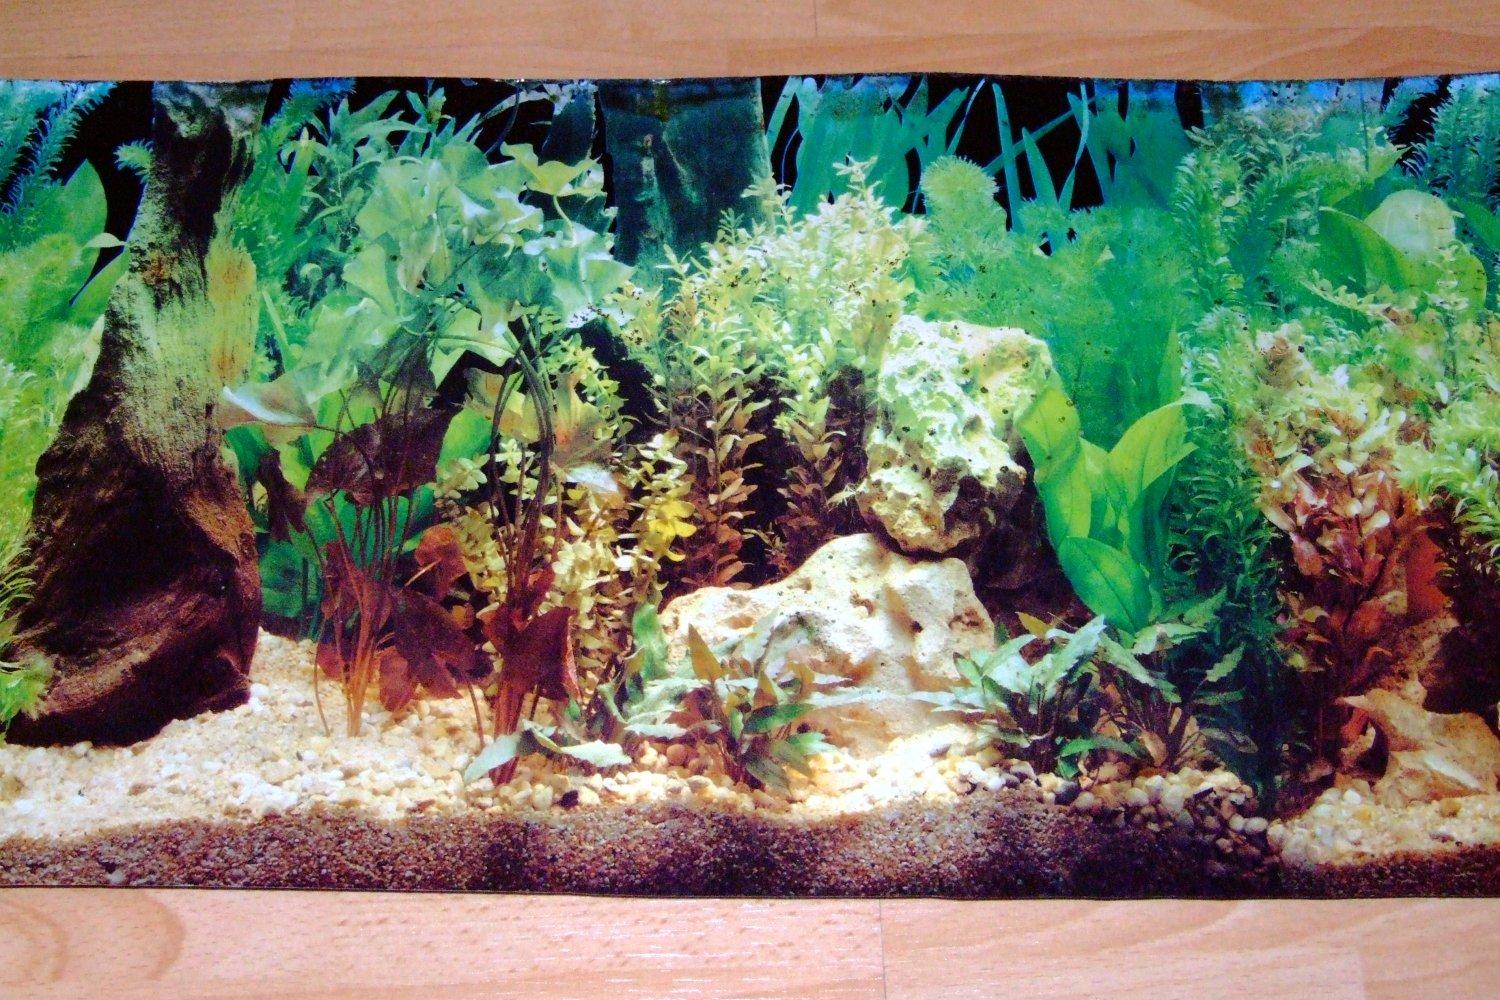 3d Fish Aquarium Background Image Amp Pictures Becuo